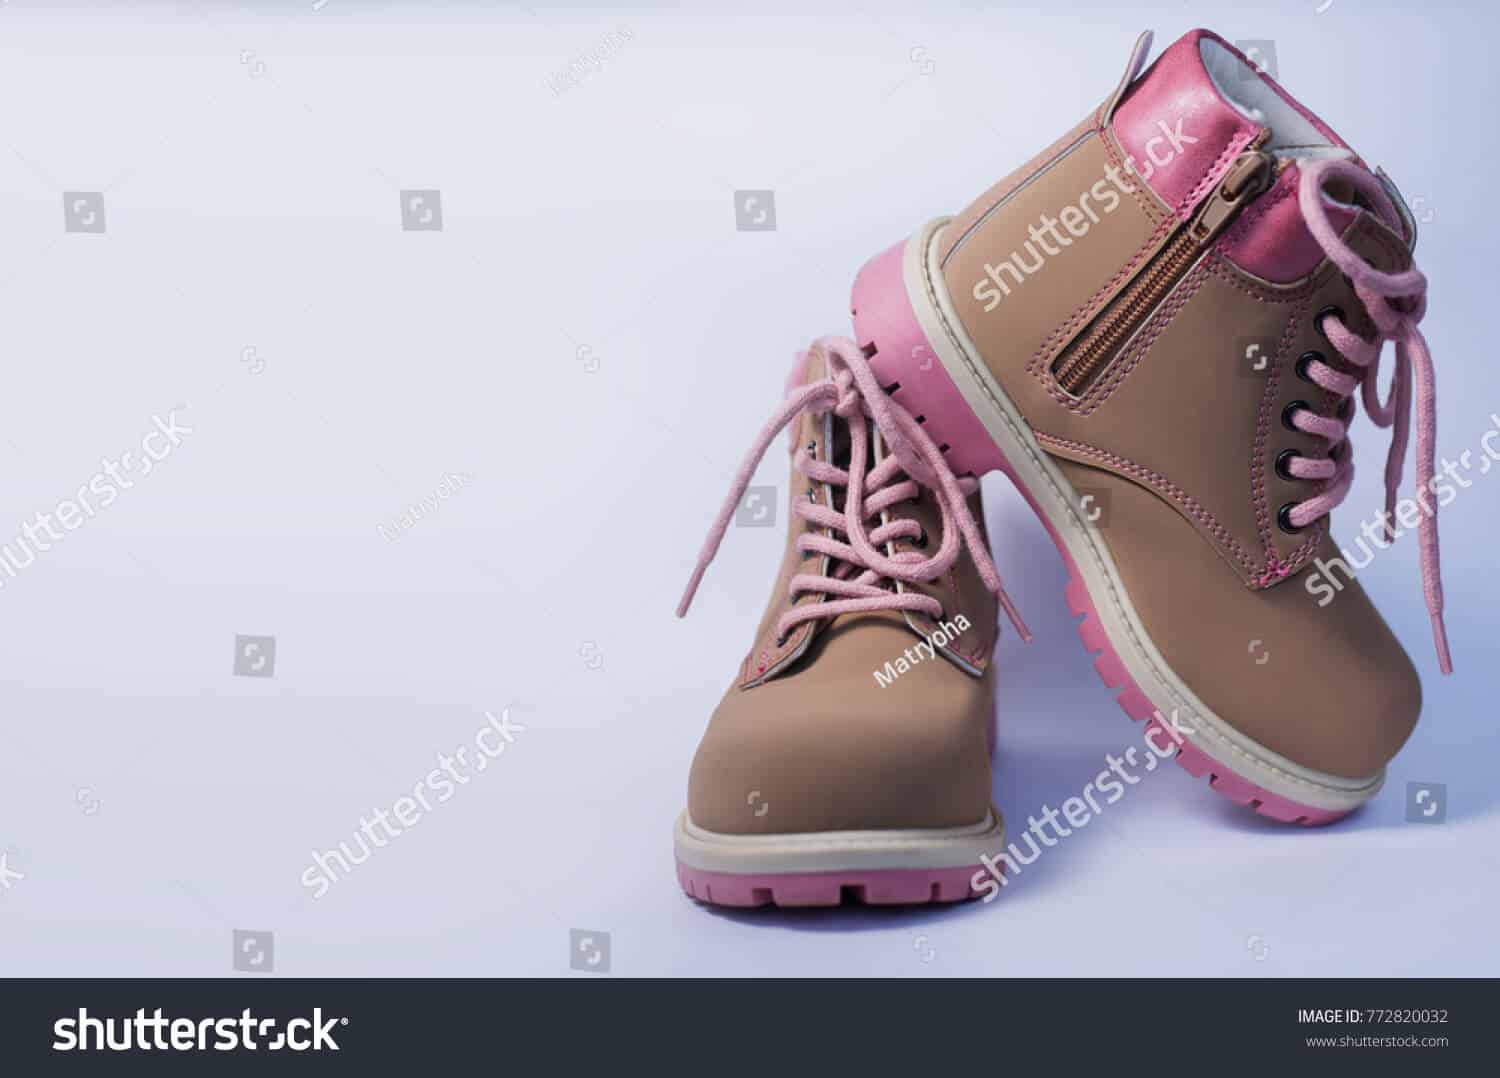 113 ngàn hình ảnh giày trẻ em chất lượng cao trên Shutterstock